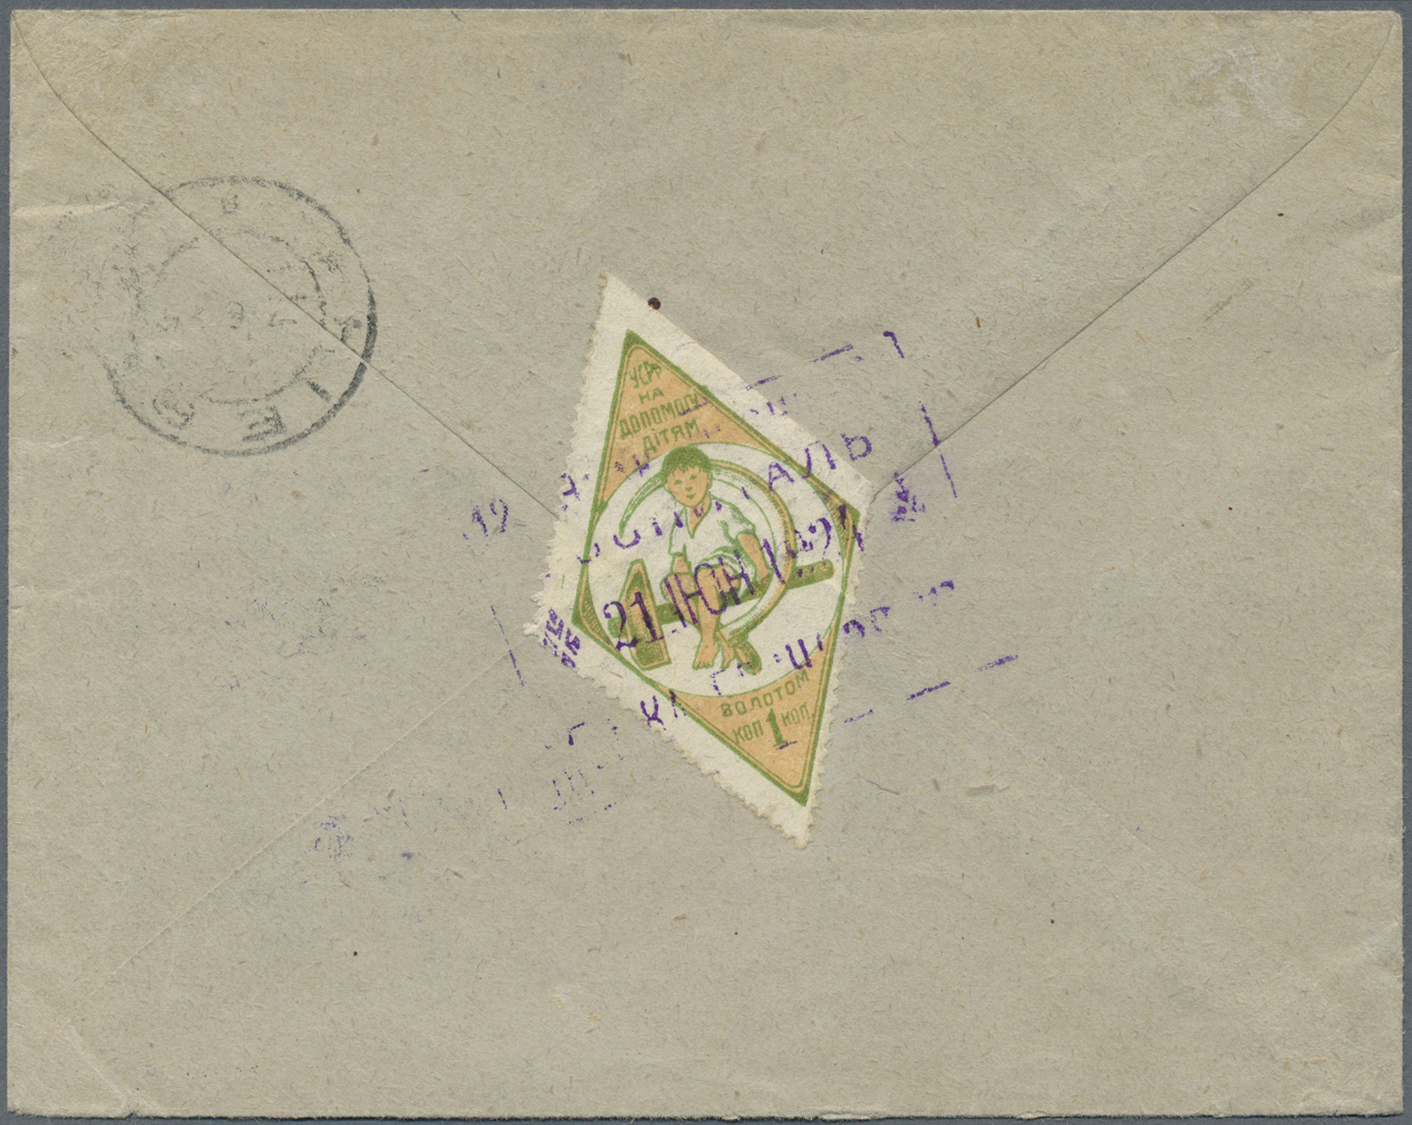 Br Sowjetunion: 1924, Nicht Ausgegebene Flugpostmarken Mit Aufdruck In Goldwährung Auf R-Brief Ab Kiew Nach Budap - Lettres & Documents